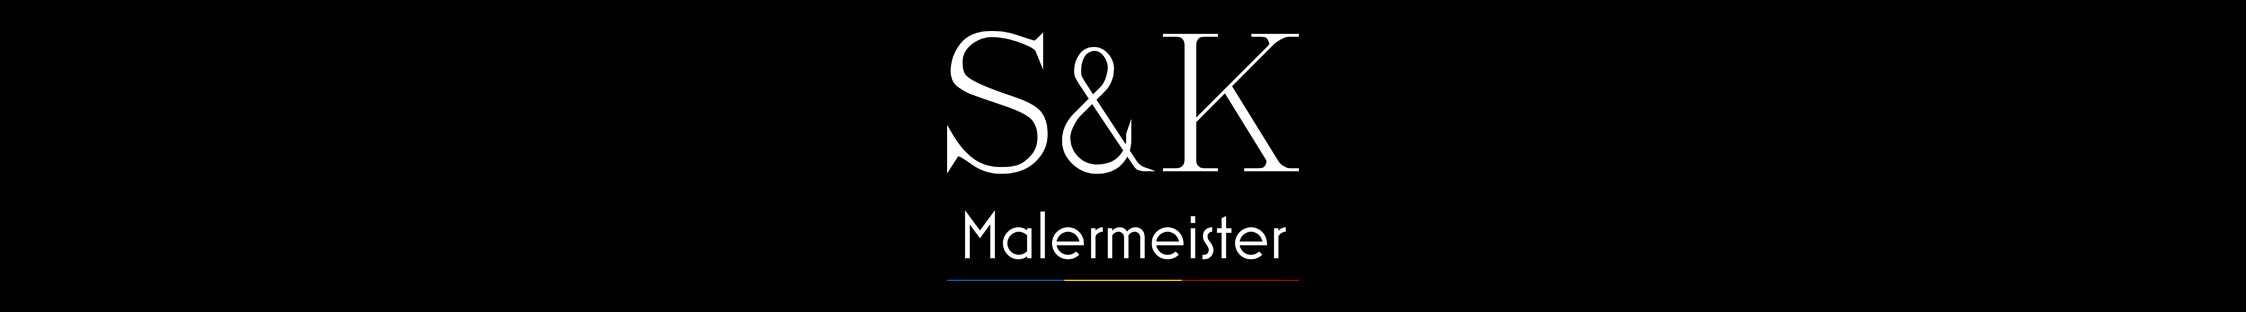 Malermeister-SK Logo